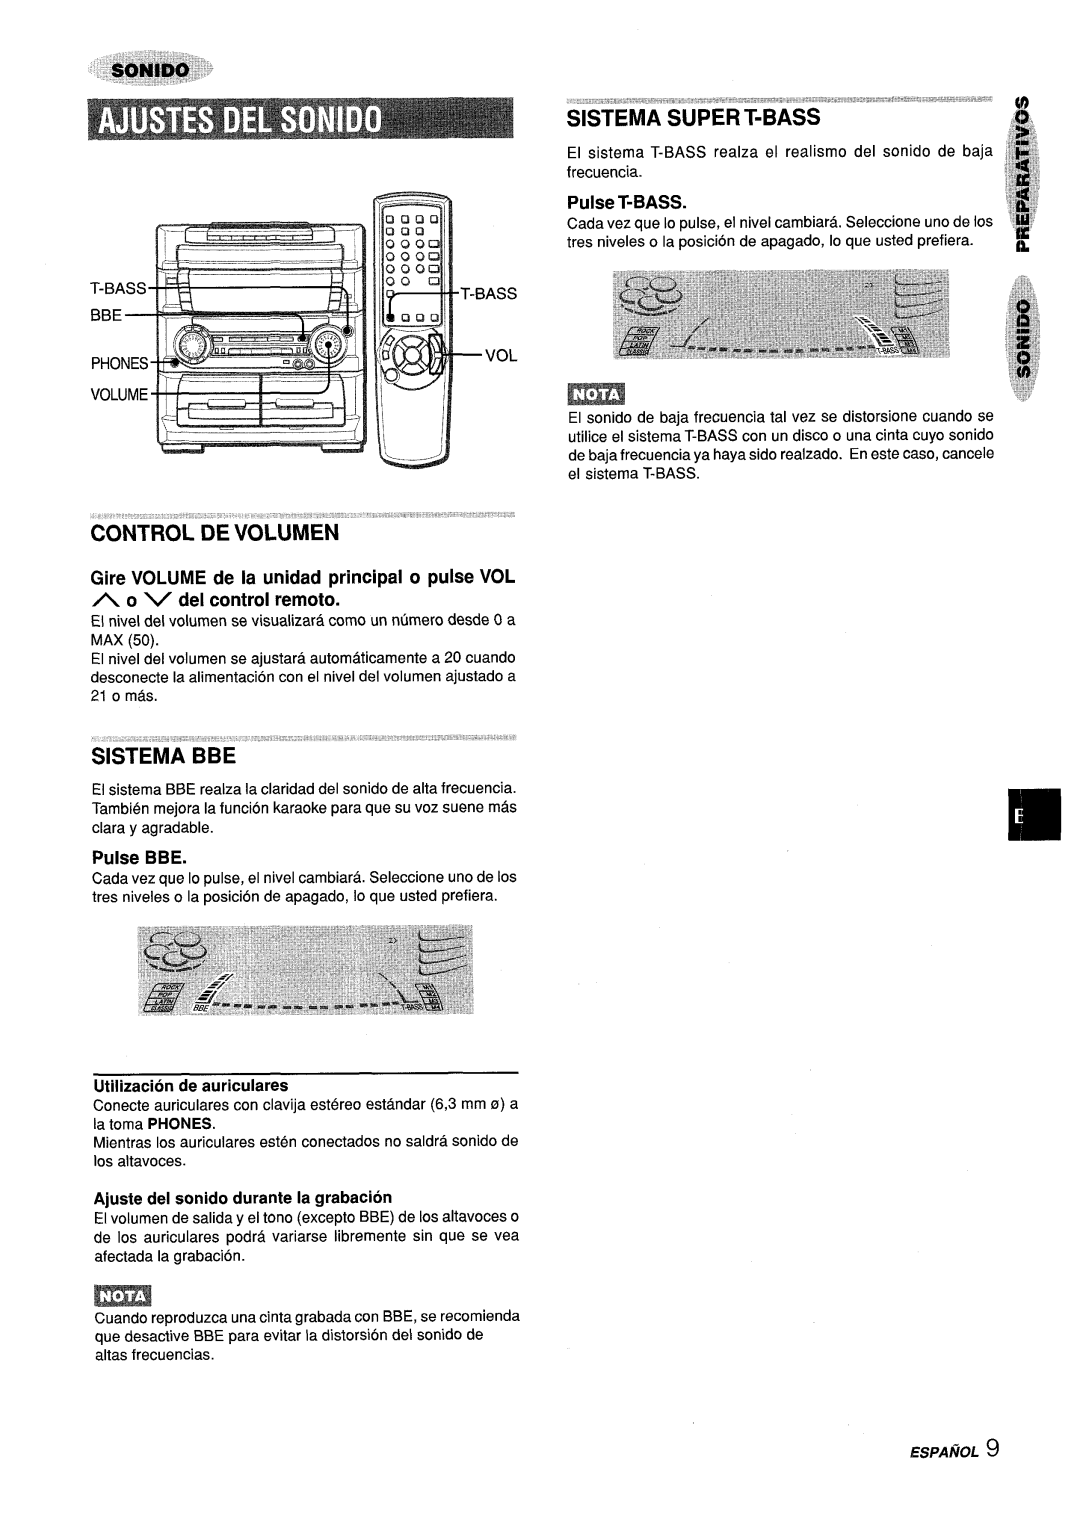 Aiwa Z-L70 manual Pulse T-BASS, Pulse BBE, Utilization de auriculares, Ajuste del sonido durante la grabacion 